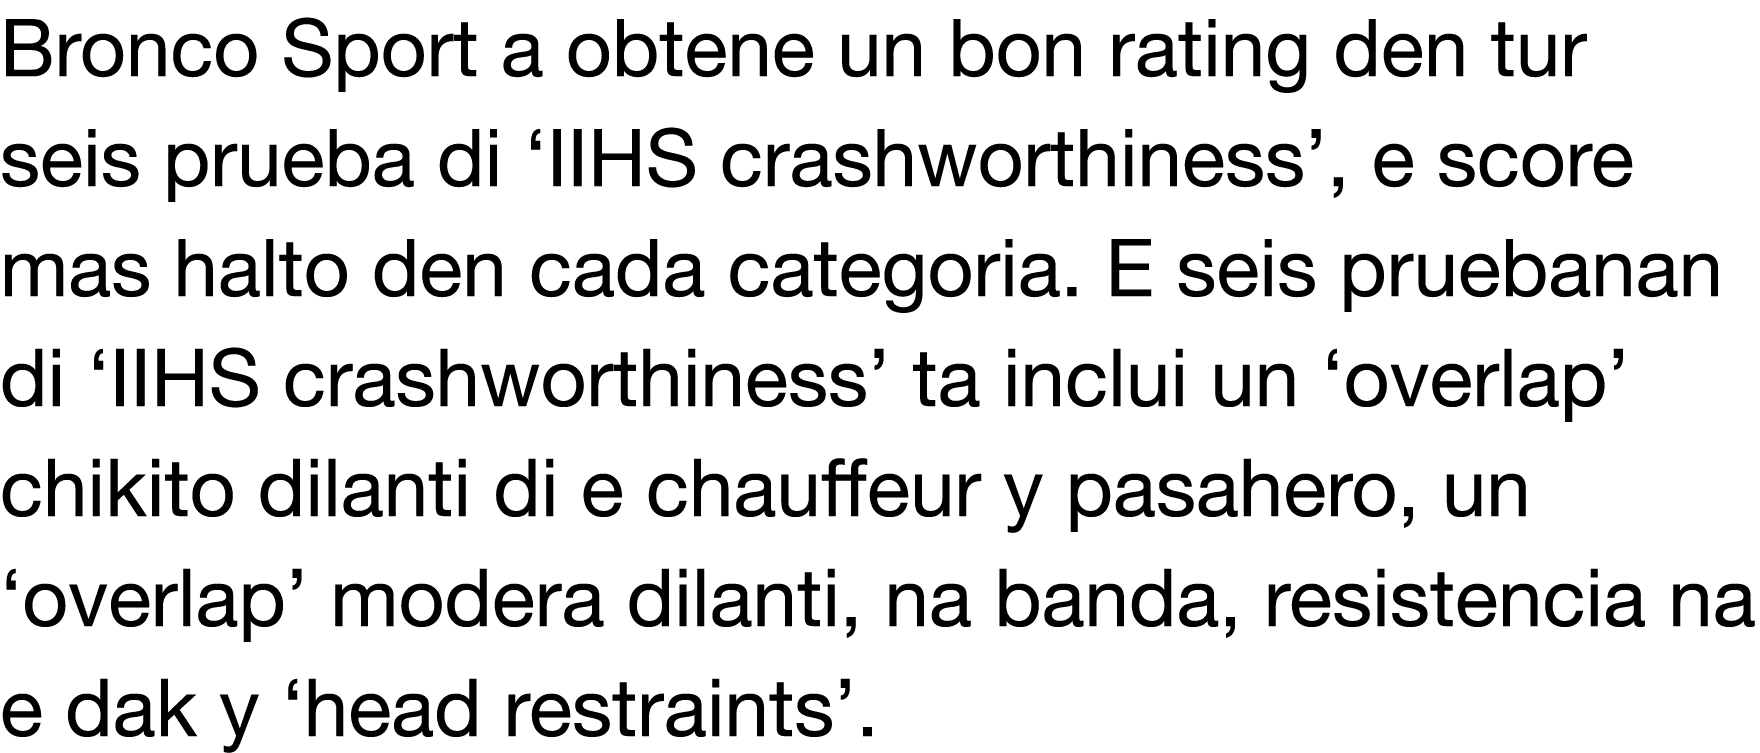 Bronco Sport a obtene un bon rating den tur seis prueba di  IIHS crashworthiness , e score mas halto den cada categor   